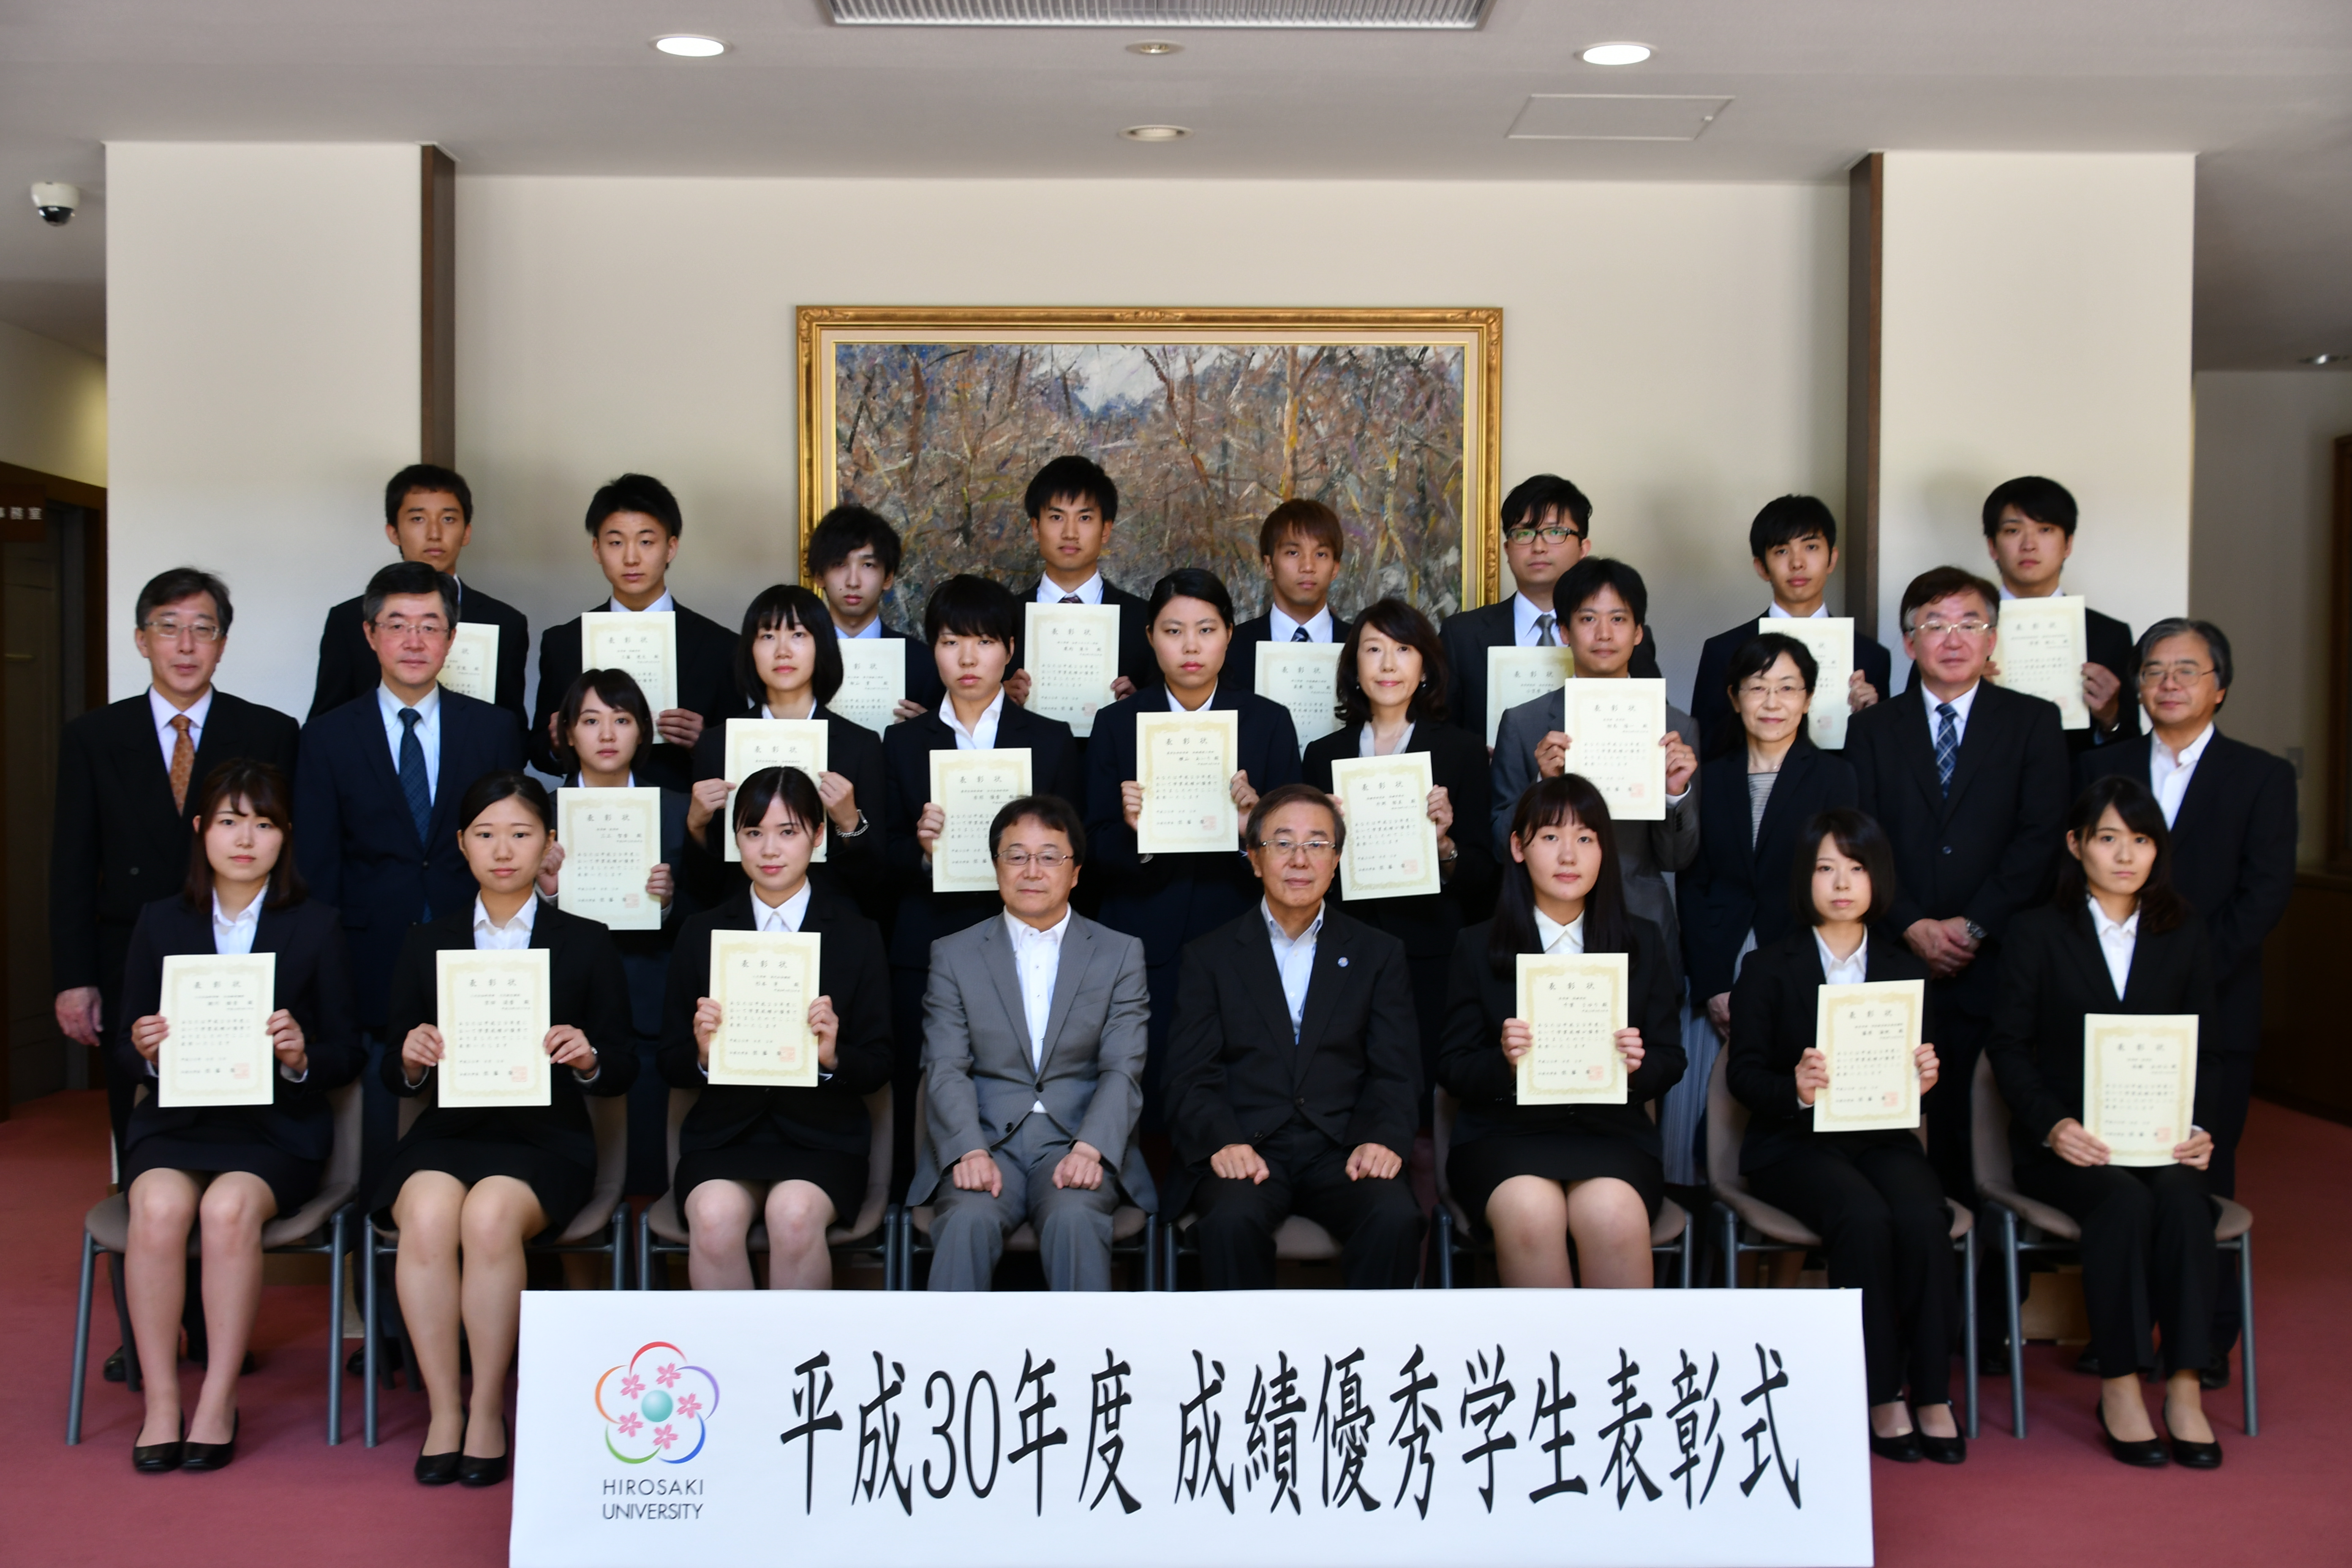 弘前大学 教育に関する表彰式 を実施 弘前大学